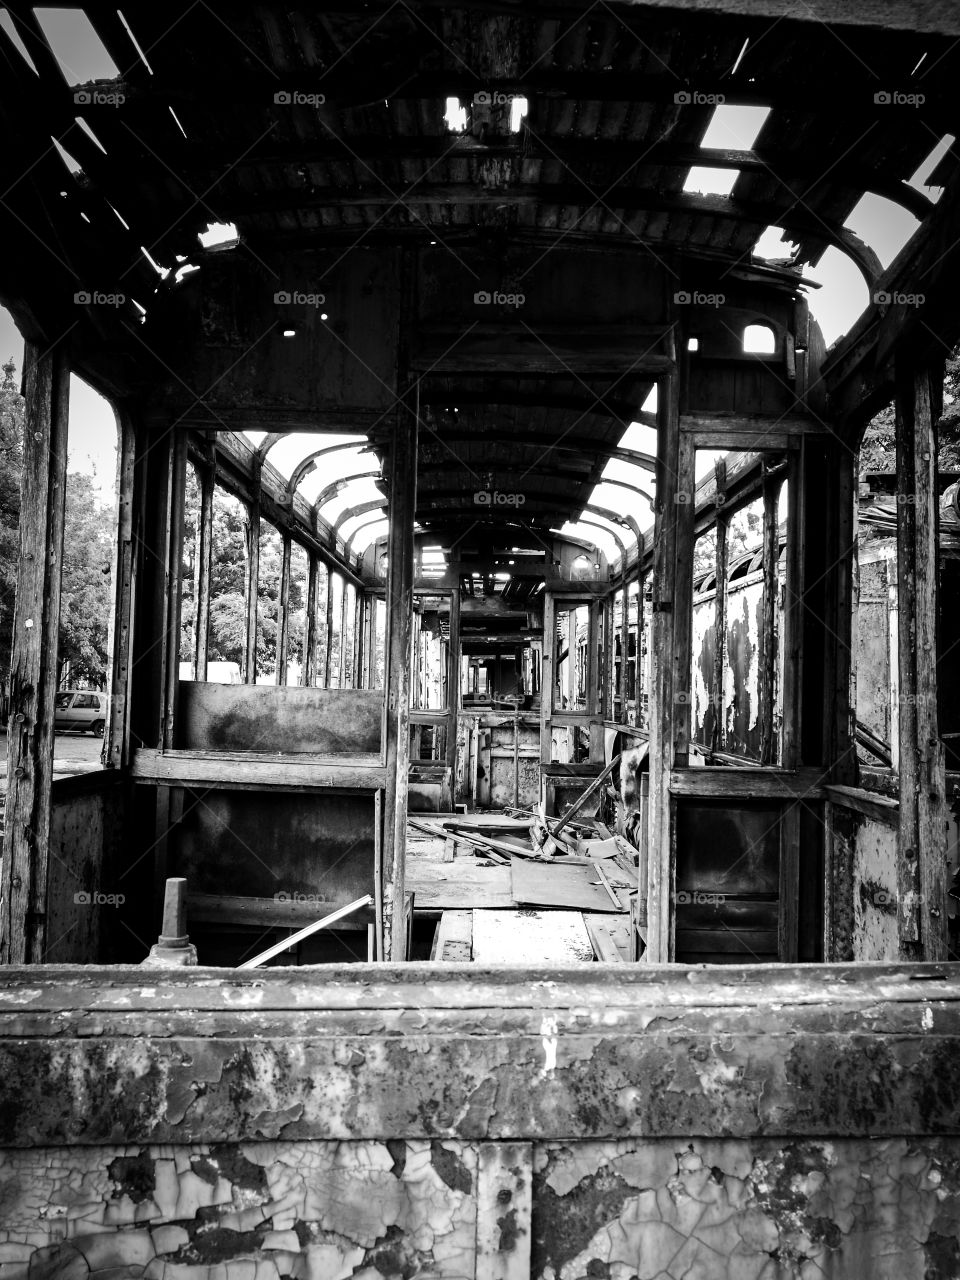 old tram